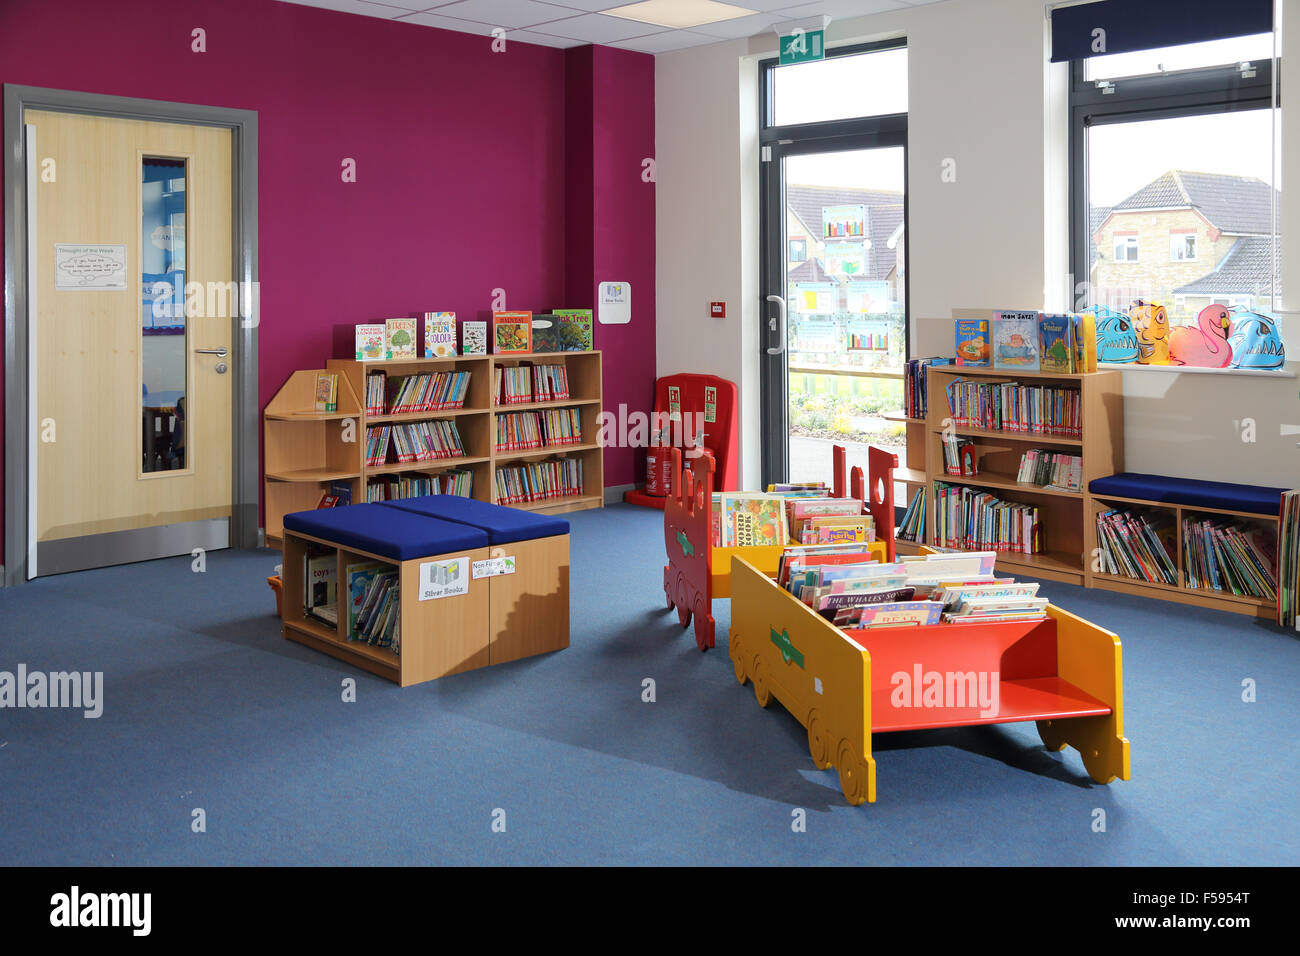 Área de biblioteca en una nueva escuela junior británica mostrando asientos y libros almacenados en el tradicional libro de casos y una mesa en forma de tren de vapor Foto de stock